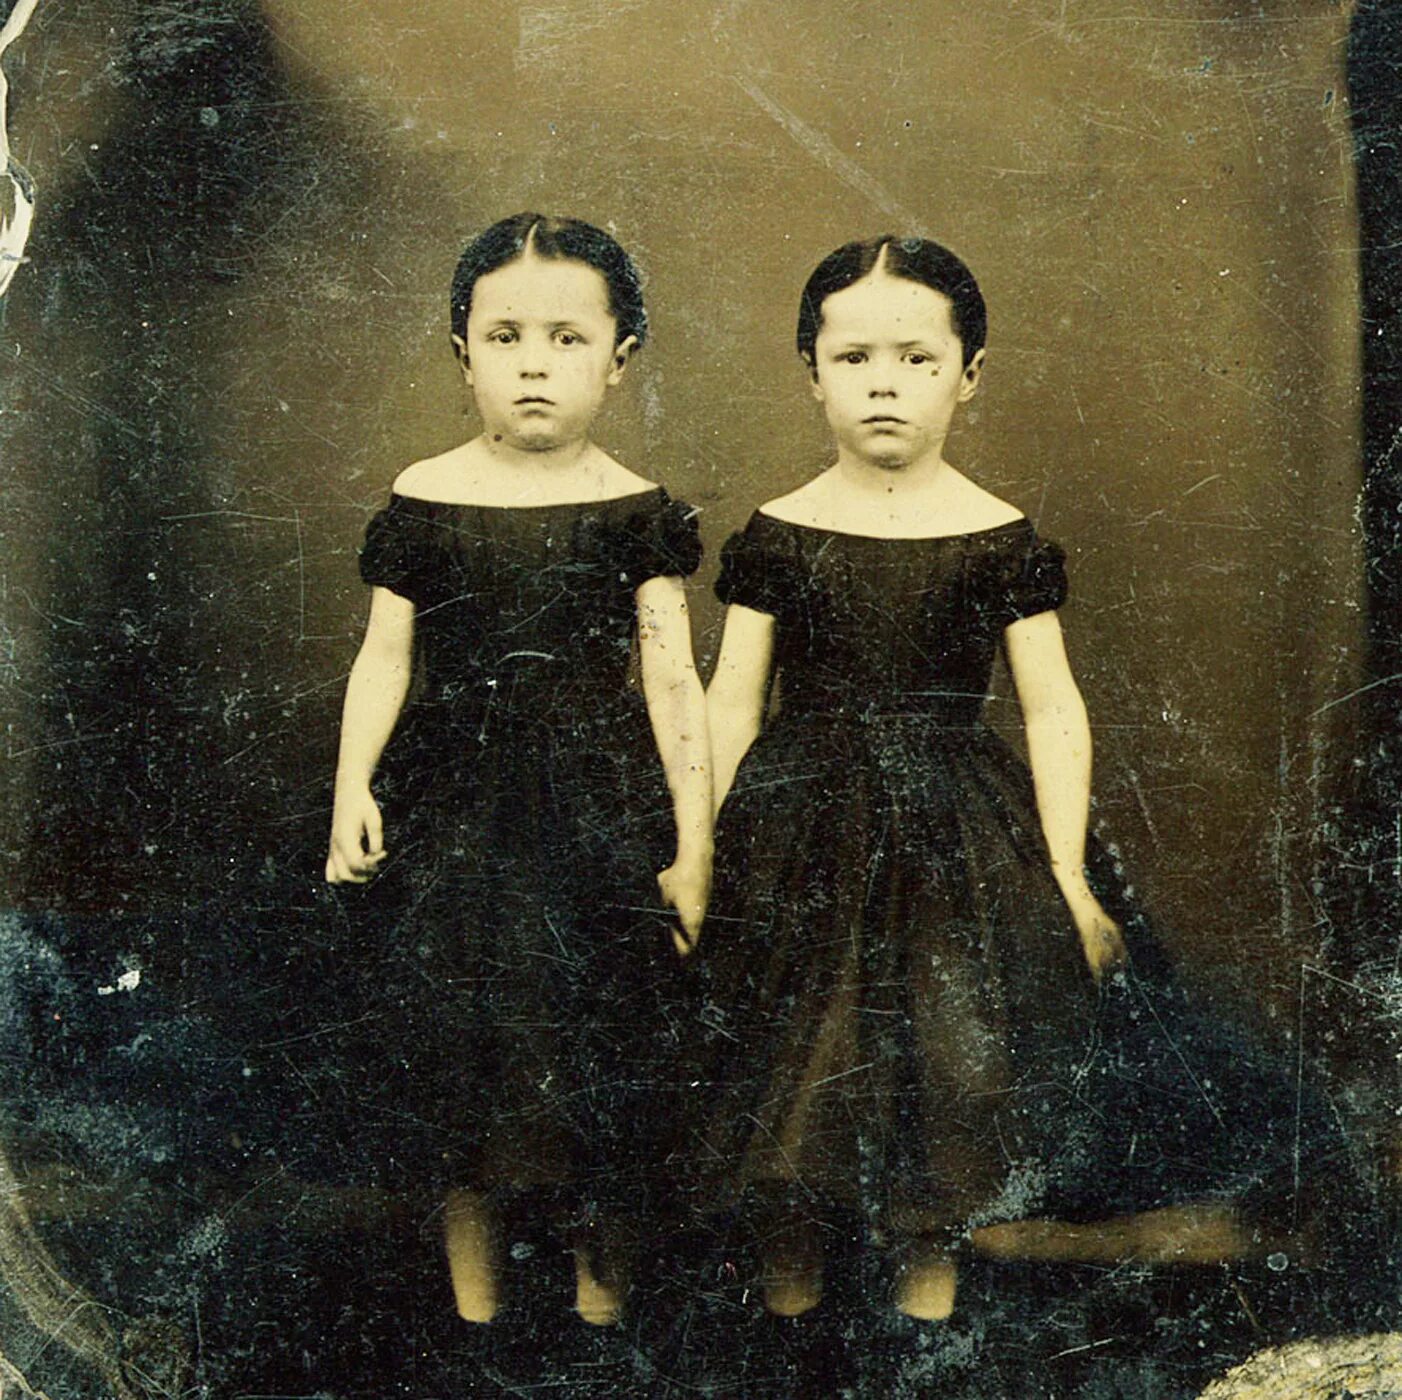 Post Mortem викторианской эпохи близняшки. Пост Мортем викторианской эпохи. Загадочная семья